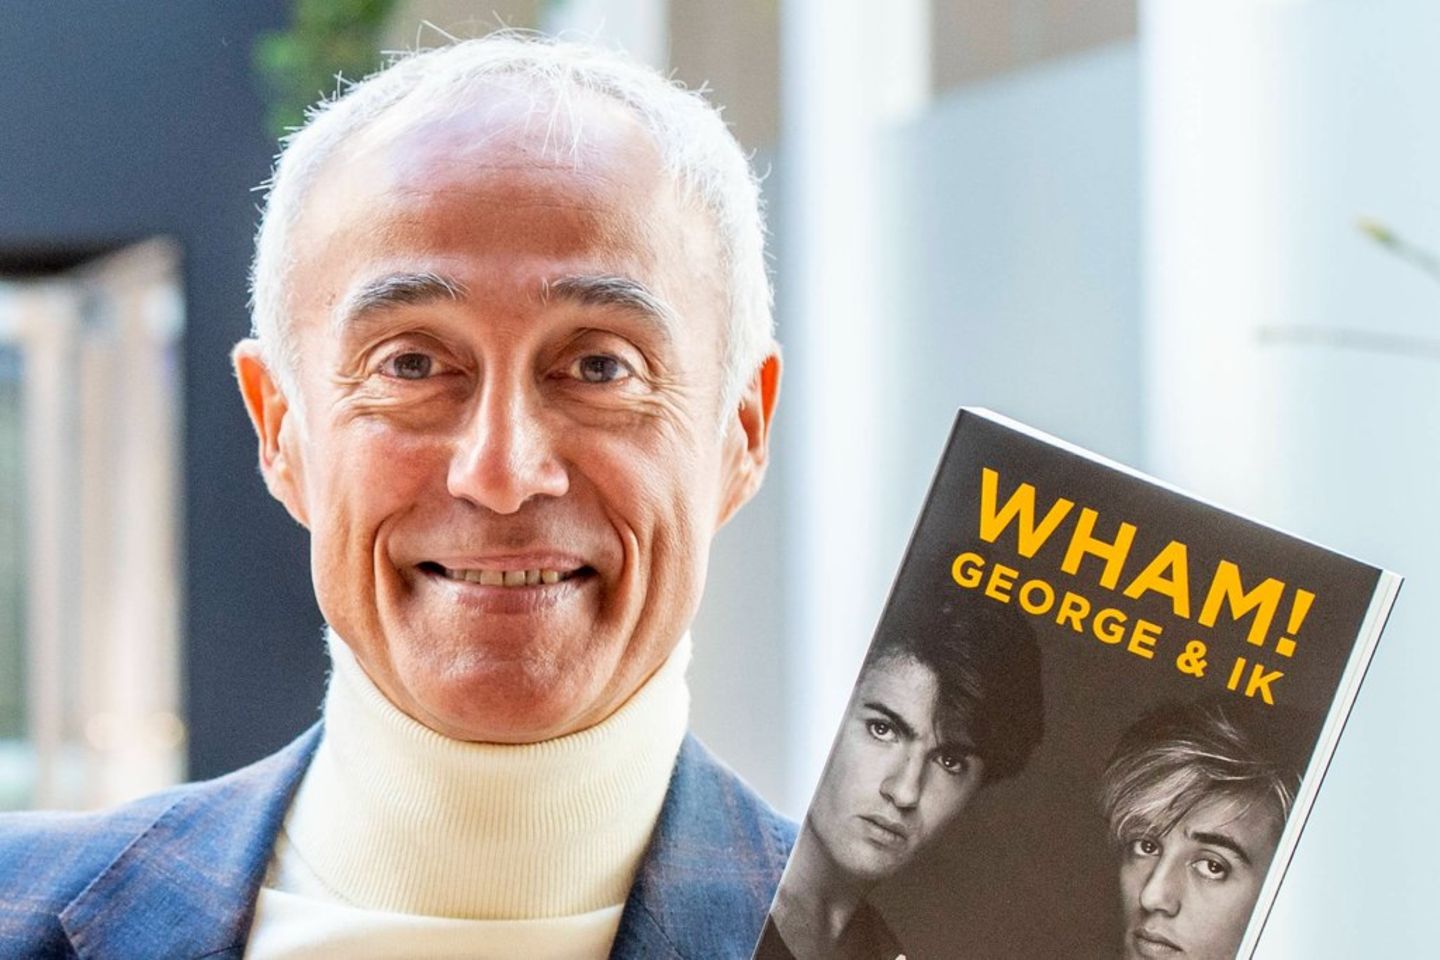 Andrew Ridgeley veröffentlichte 2019 seine Autobiografie: "Wham! George & Ich"